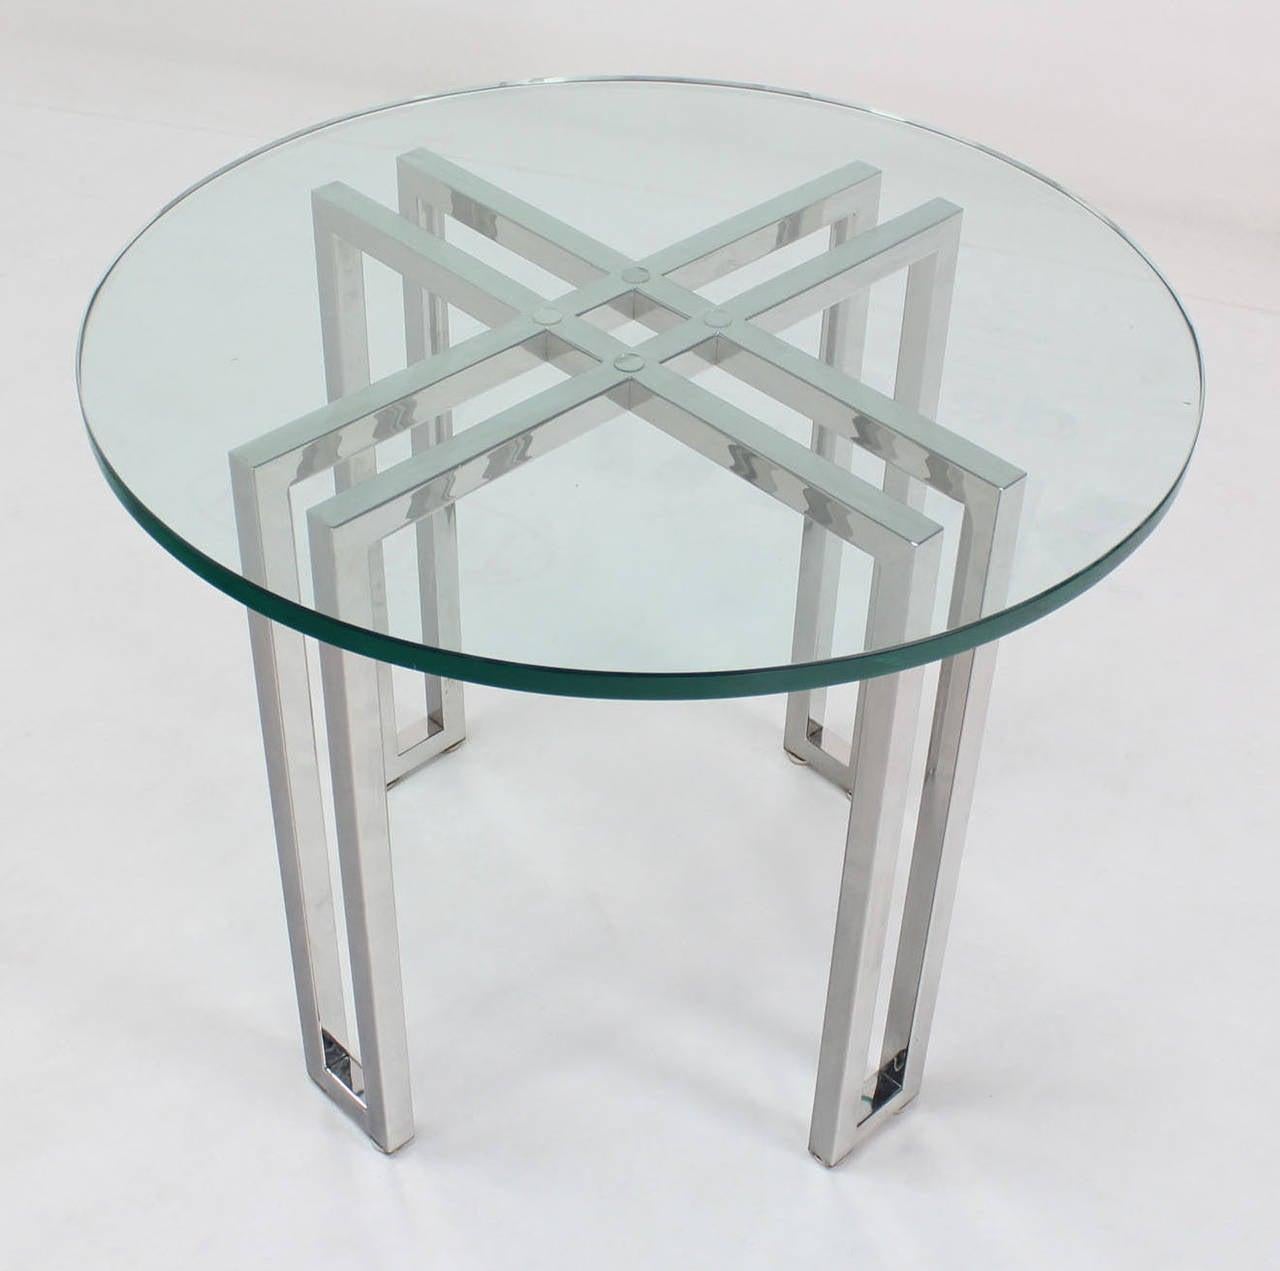 Table d'appoint ou d'appoint en verre de qualité, fabriquée en studio, d'une épaisseur de 3/4 de pouce, sur une base solide en acier inoxydable poli.